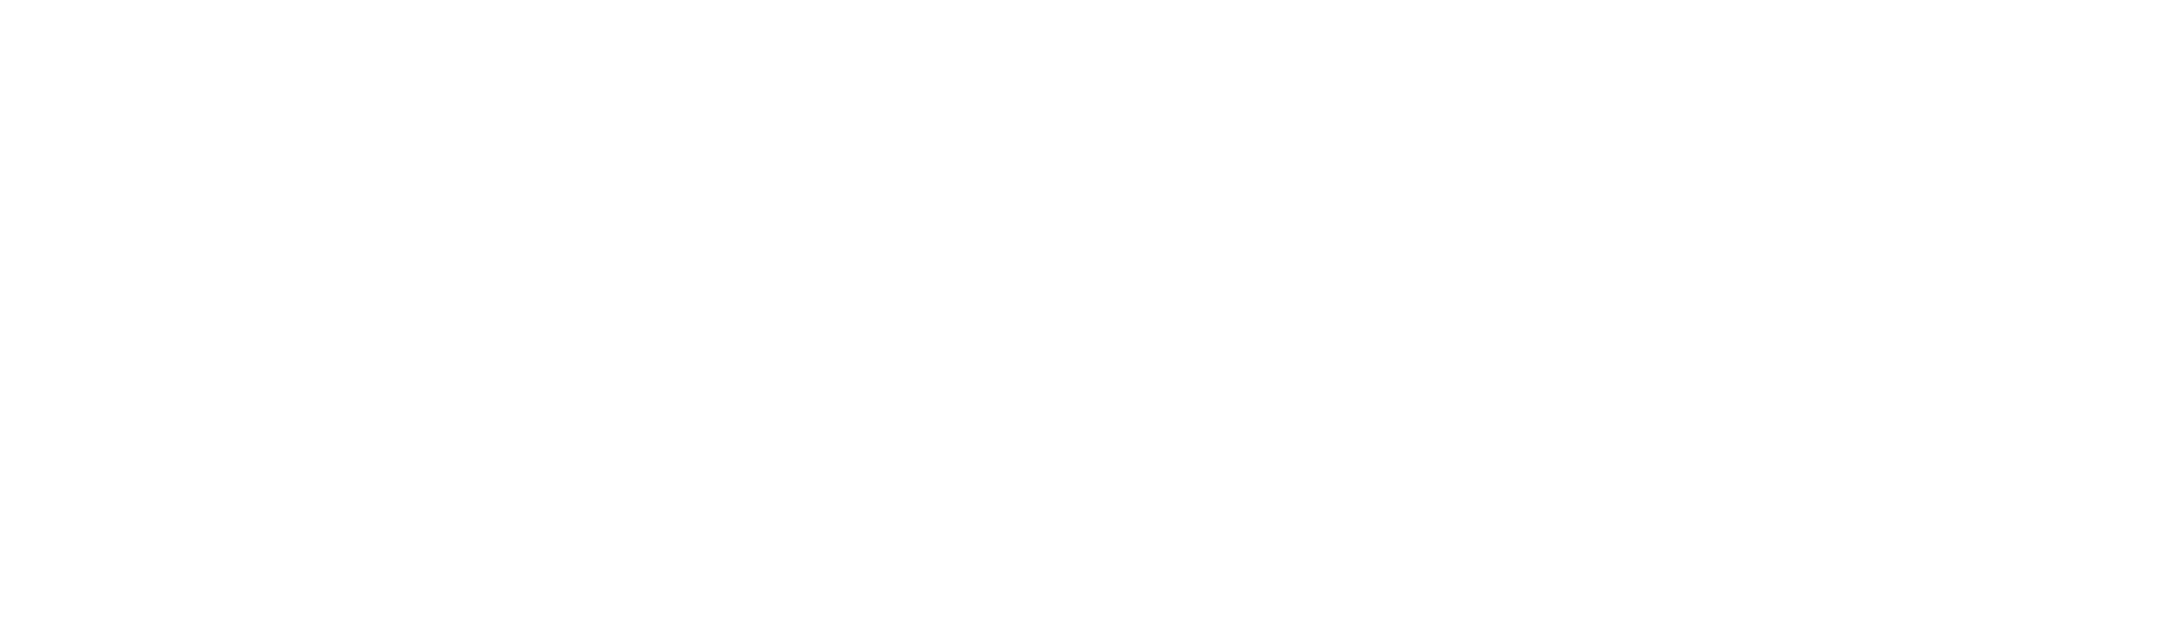 Wodify-logo-white